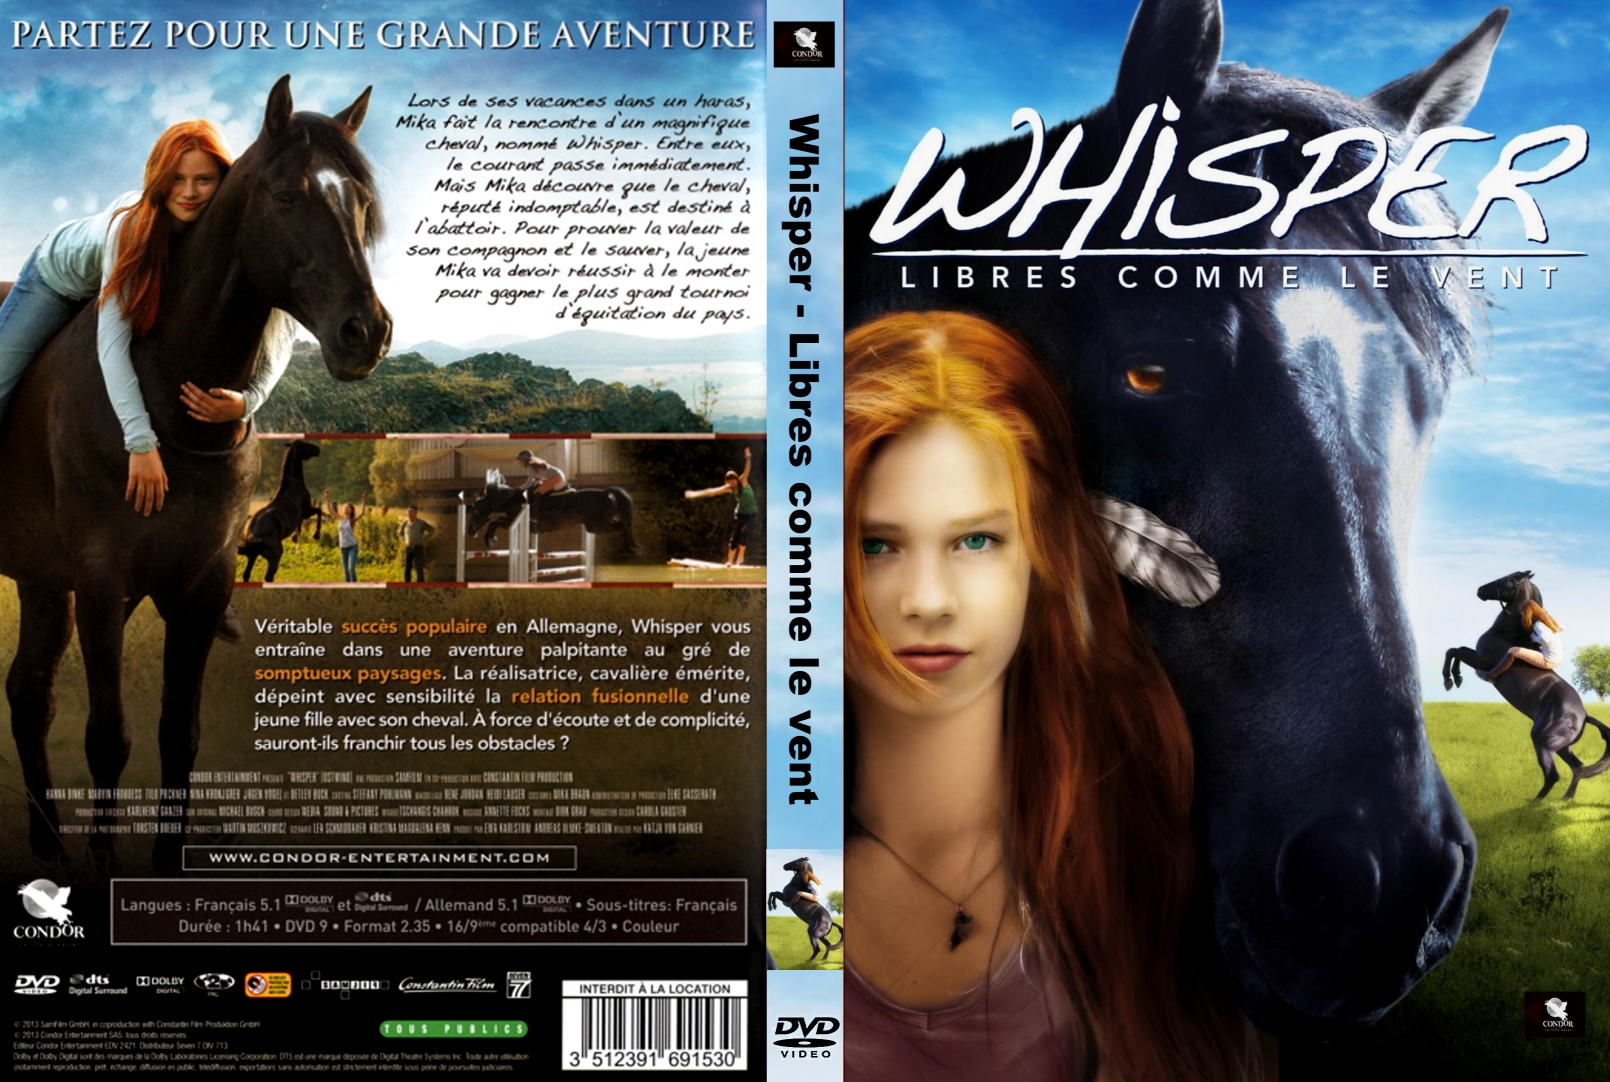 Jaquette DVD Whisper : Libres comme le vent custom